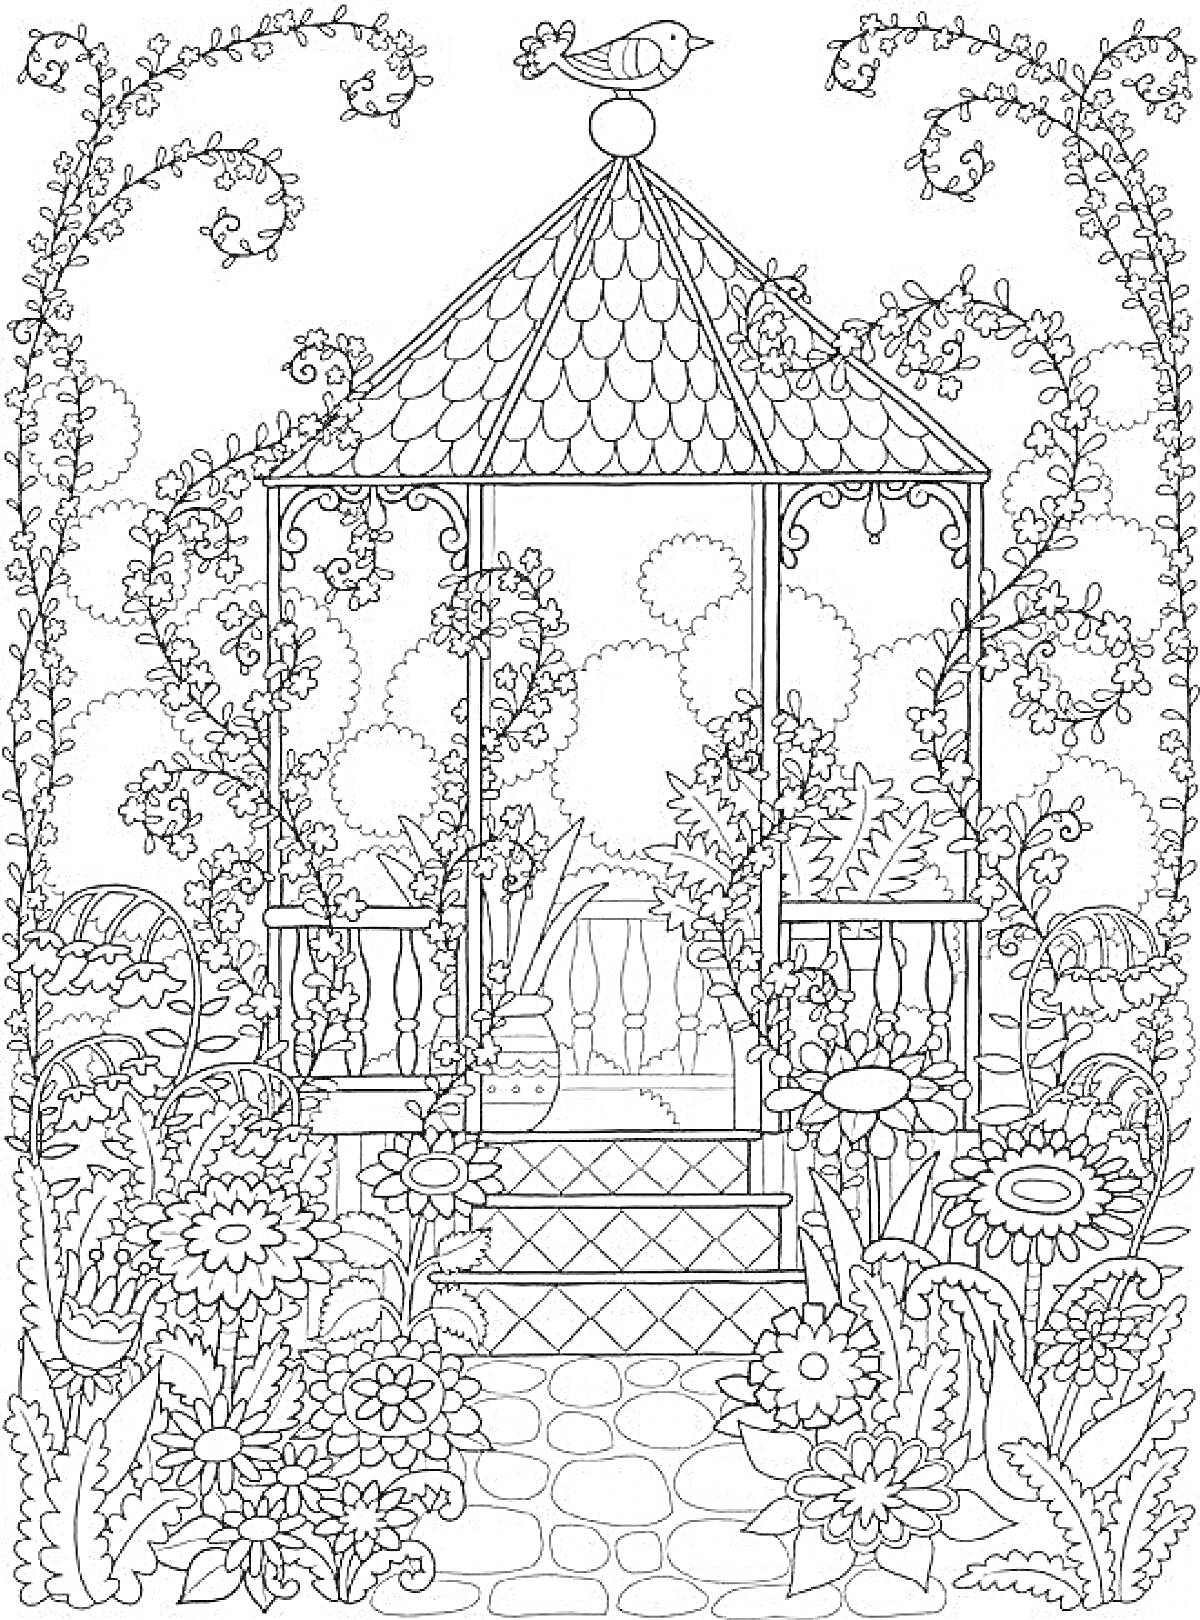 Раскраска Беседка в волшебном саду с птицей, цветами, кустарниками и каменной дорожкой